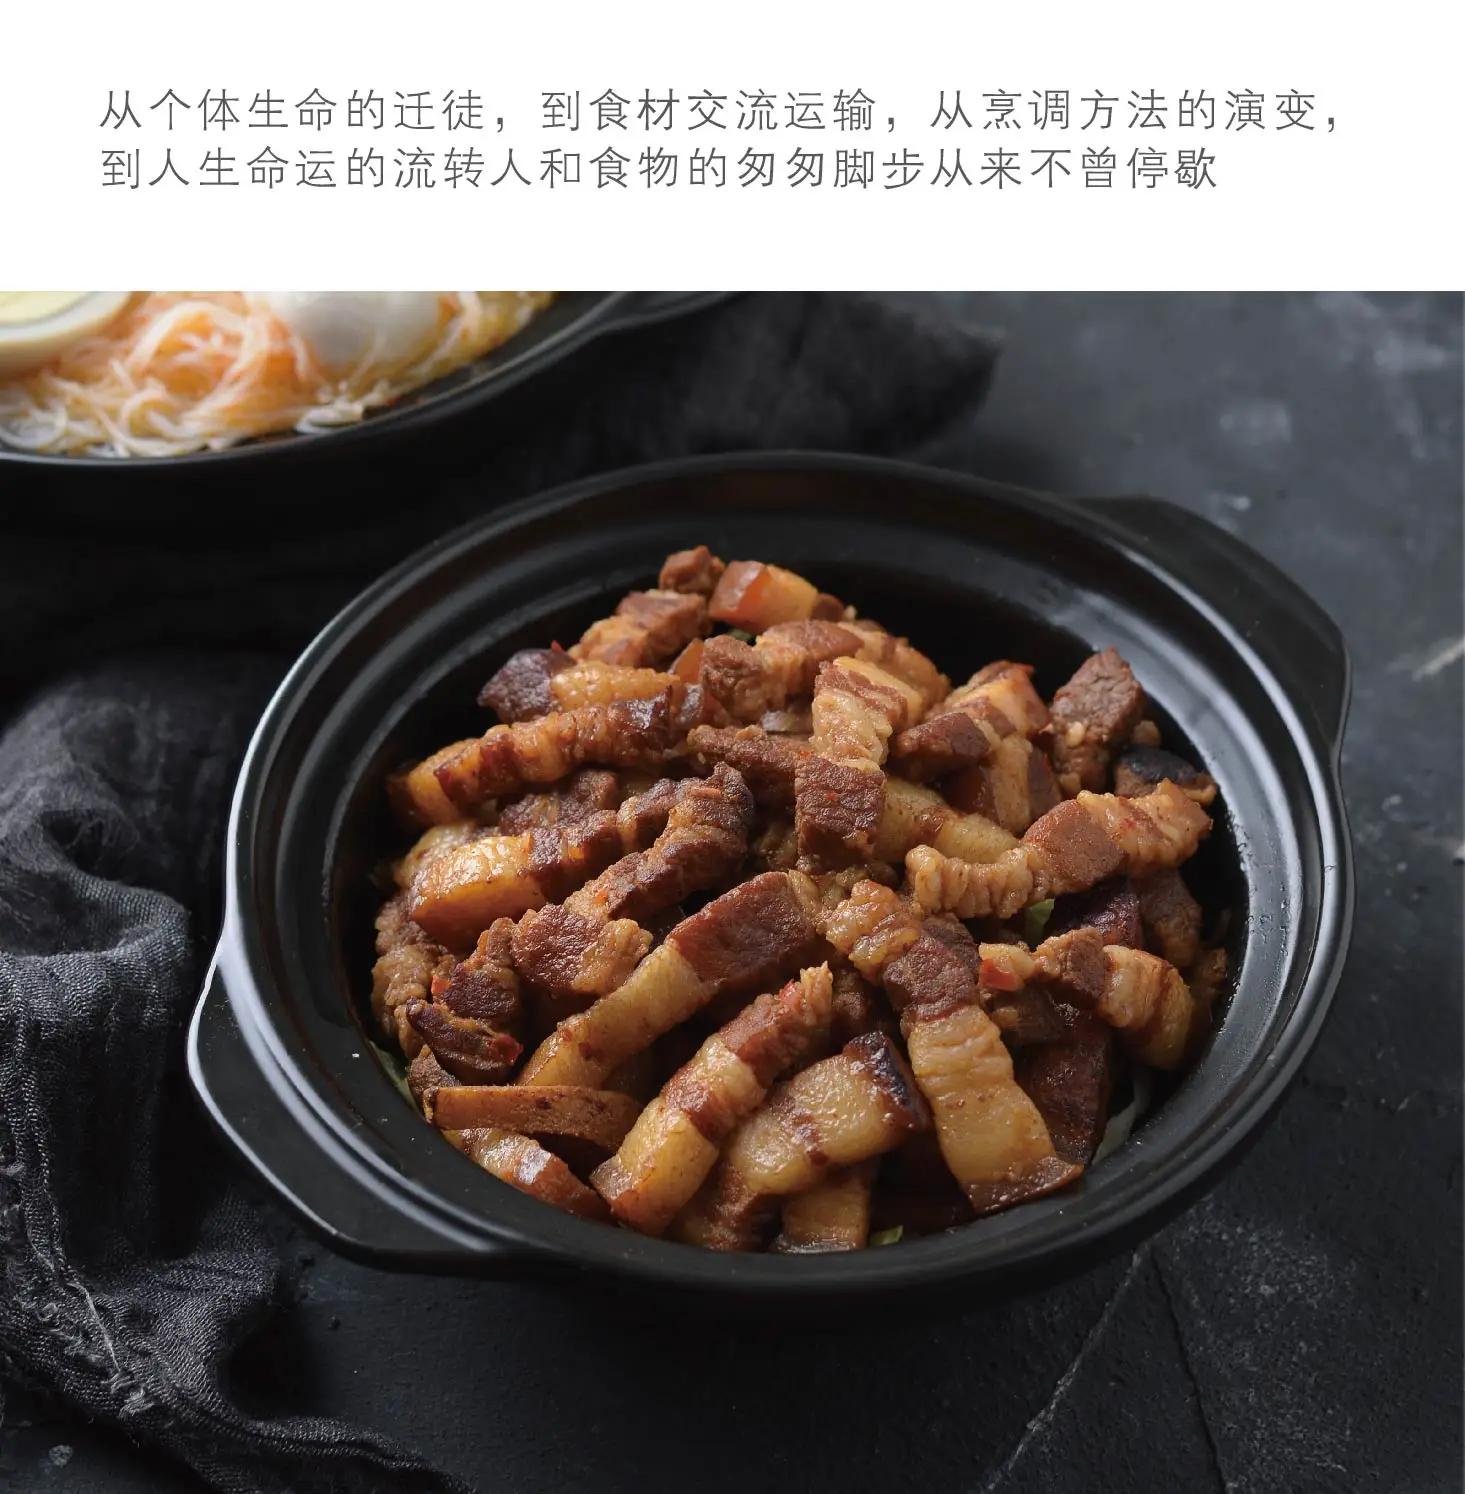 Китайская запеканка тушеная куриный рис высокая термостойкость маленькая кастрюля для тушения мелкая кастрюля для варки